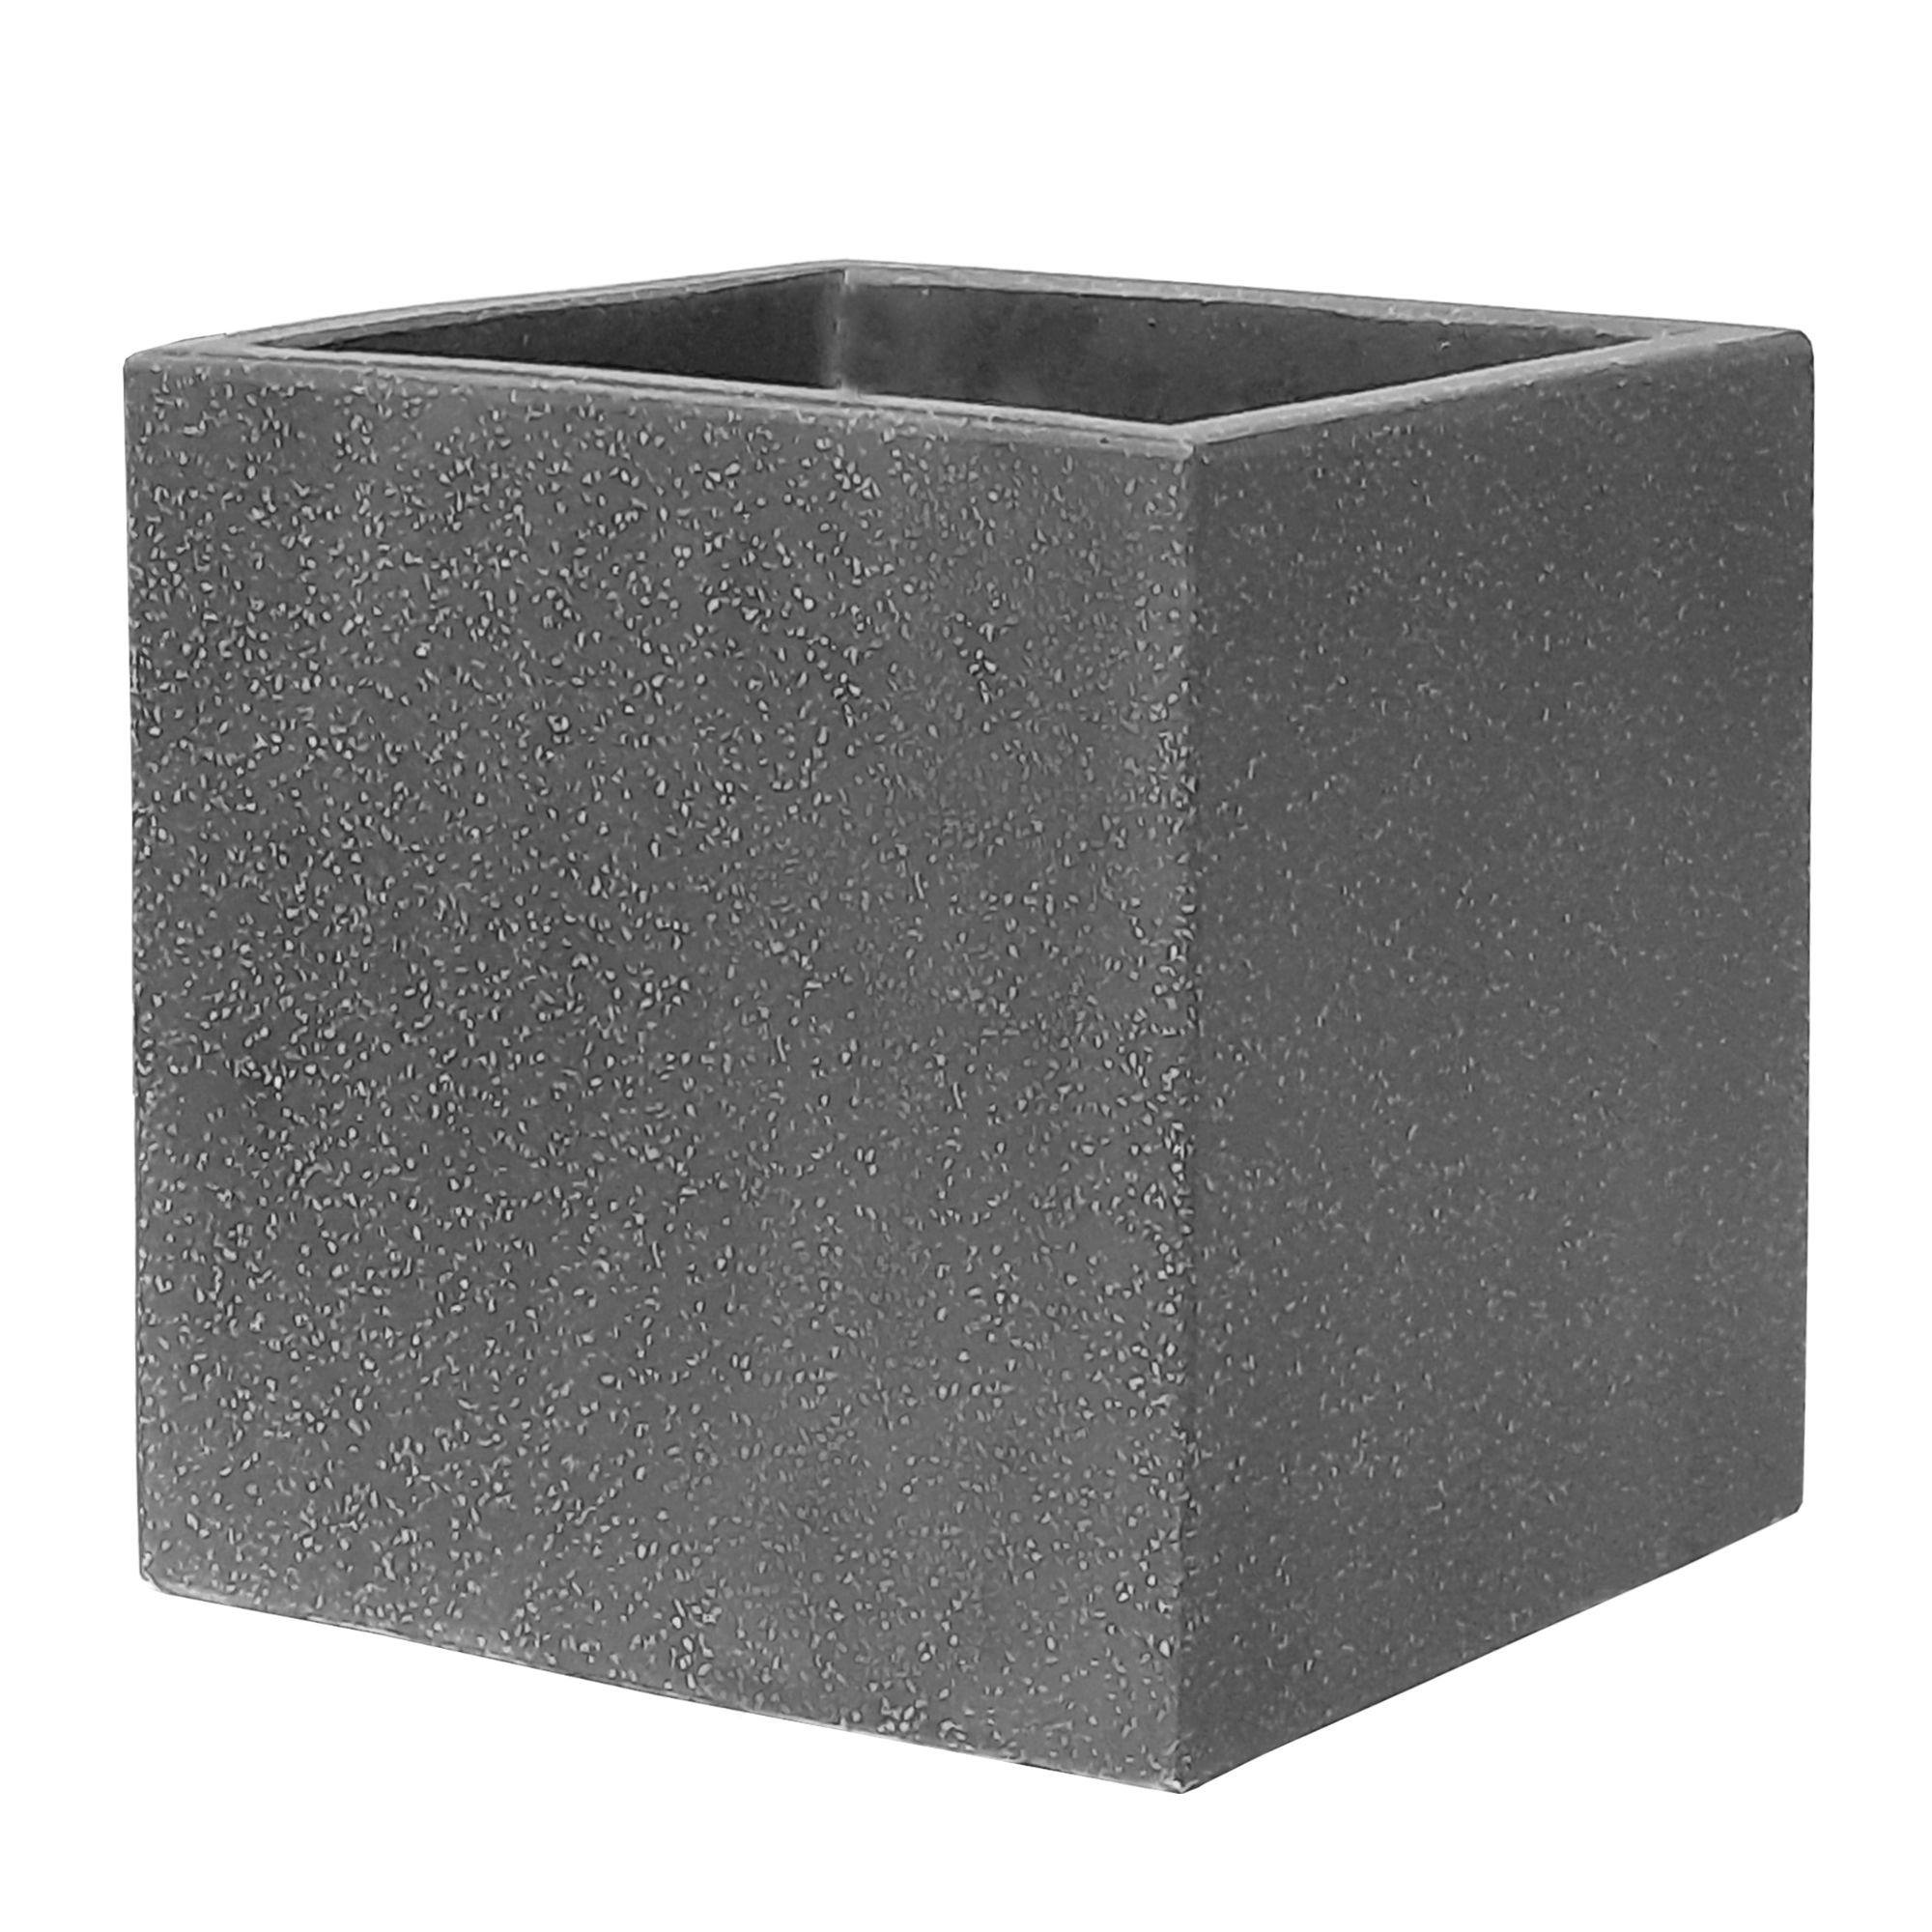 Energoteam Comptetion Square Pot Grey